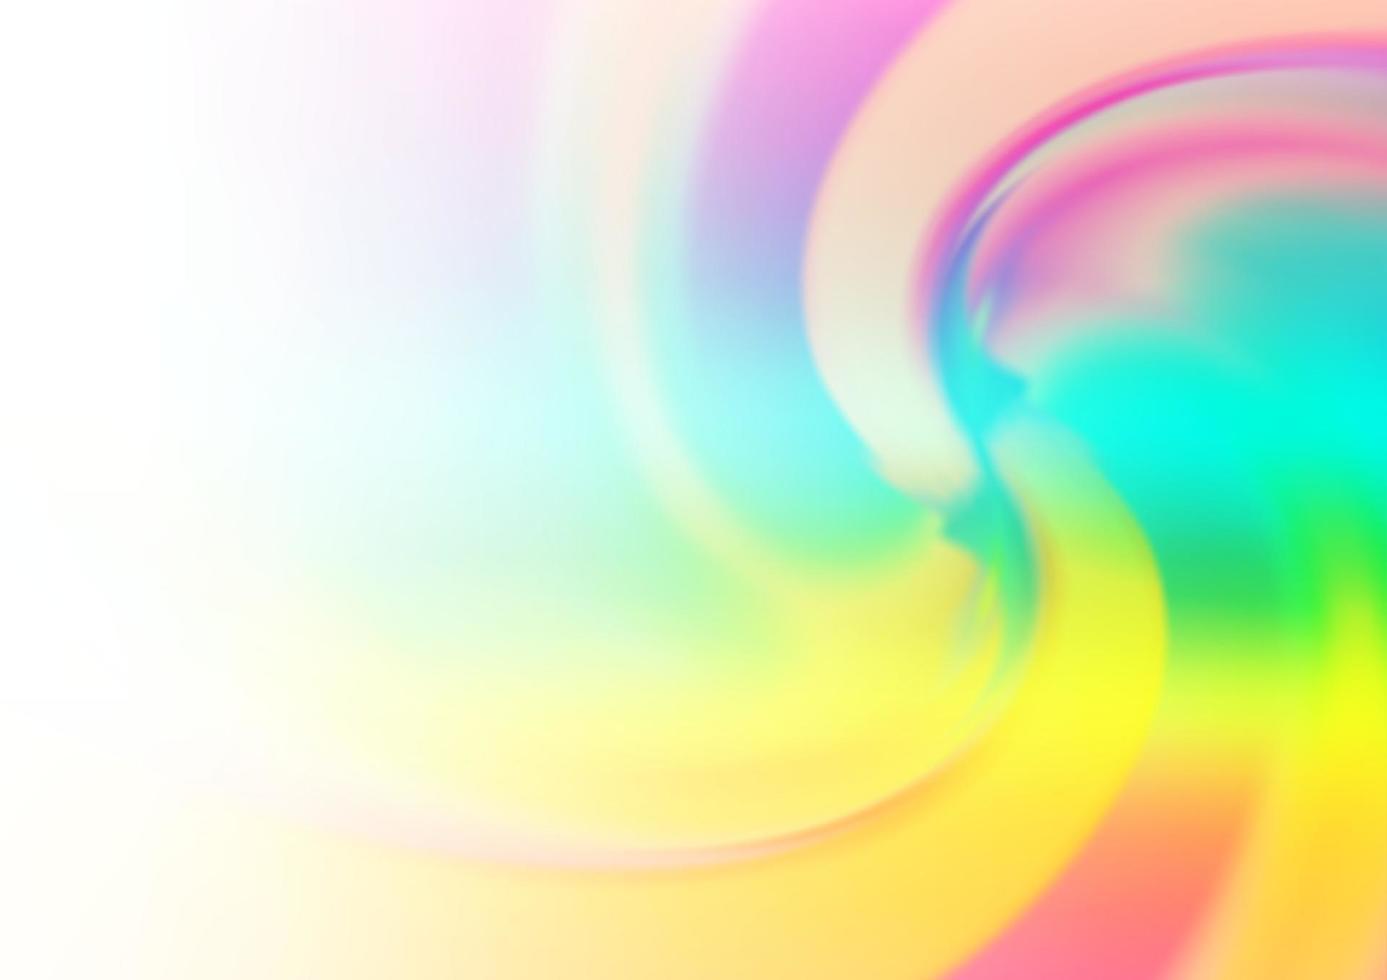 luce multicolore, modello vettoriale arcobaleno con forme di bolle.